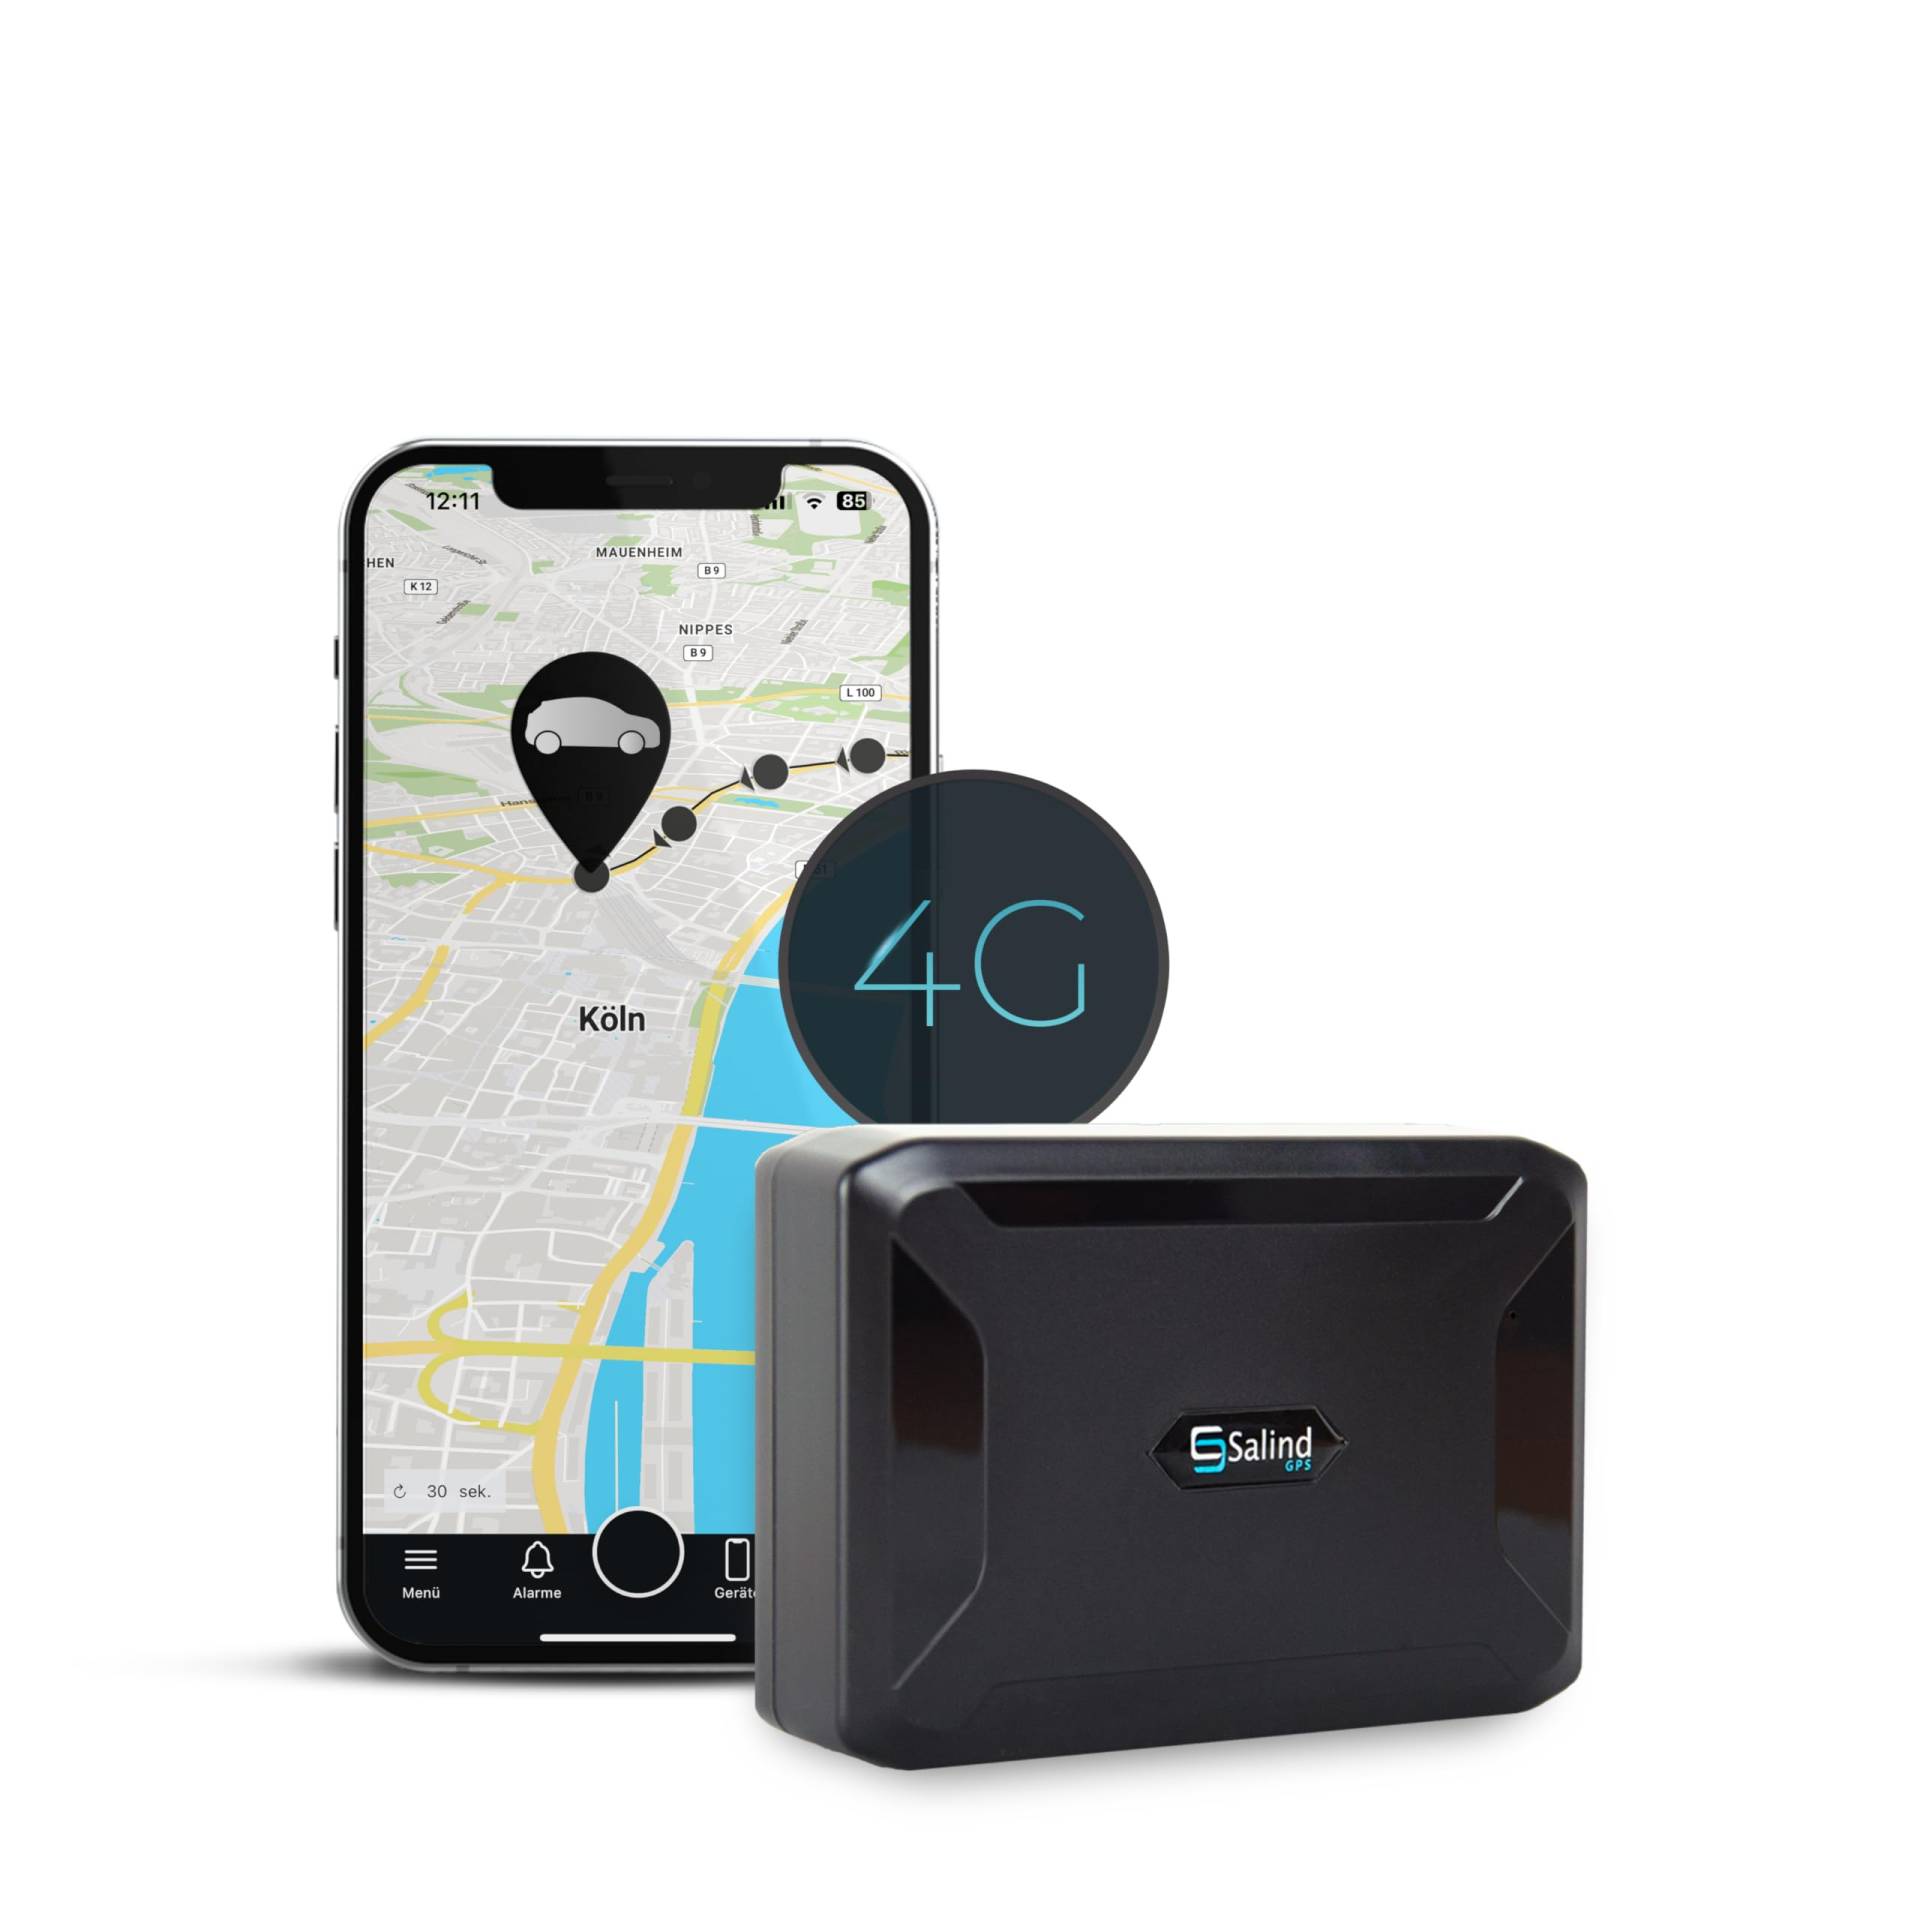 SALIND GPS Tracker 11 (Modell 4G) - GPS-Tracker Auto, Motorrad, Fahrzeuge und LKW´s mit Magnet, etwa 40 Tage Akkulaufzeit (bis zu 90 Tage im Standby Modus) von Salind GPS